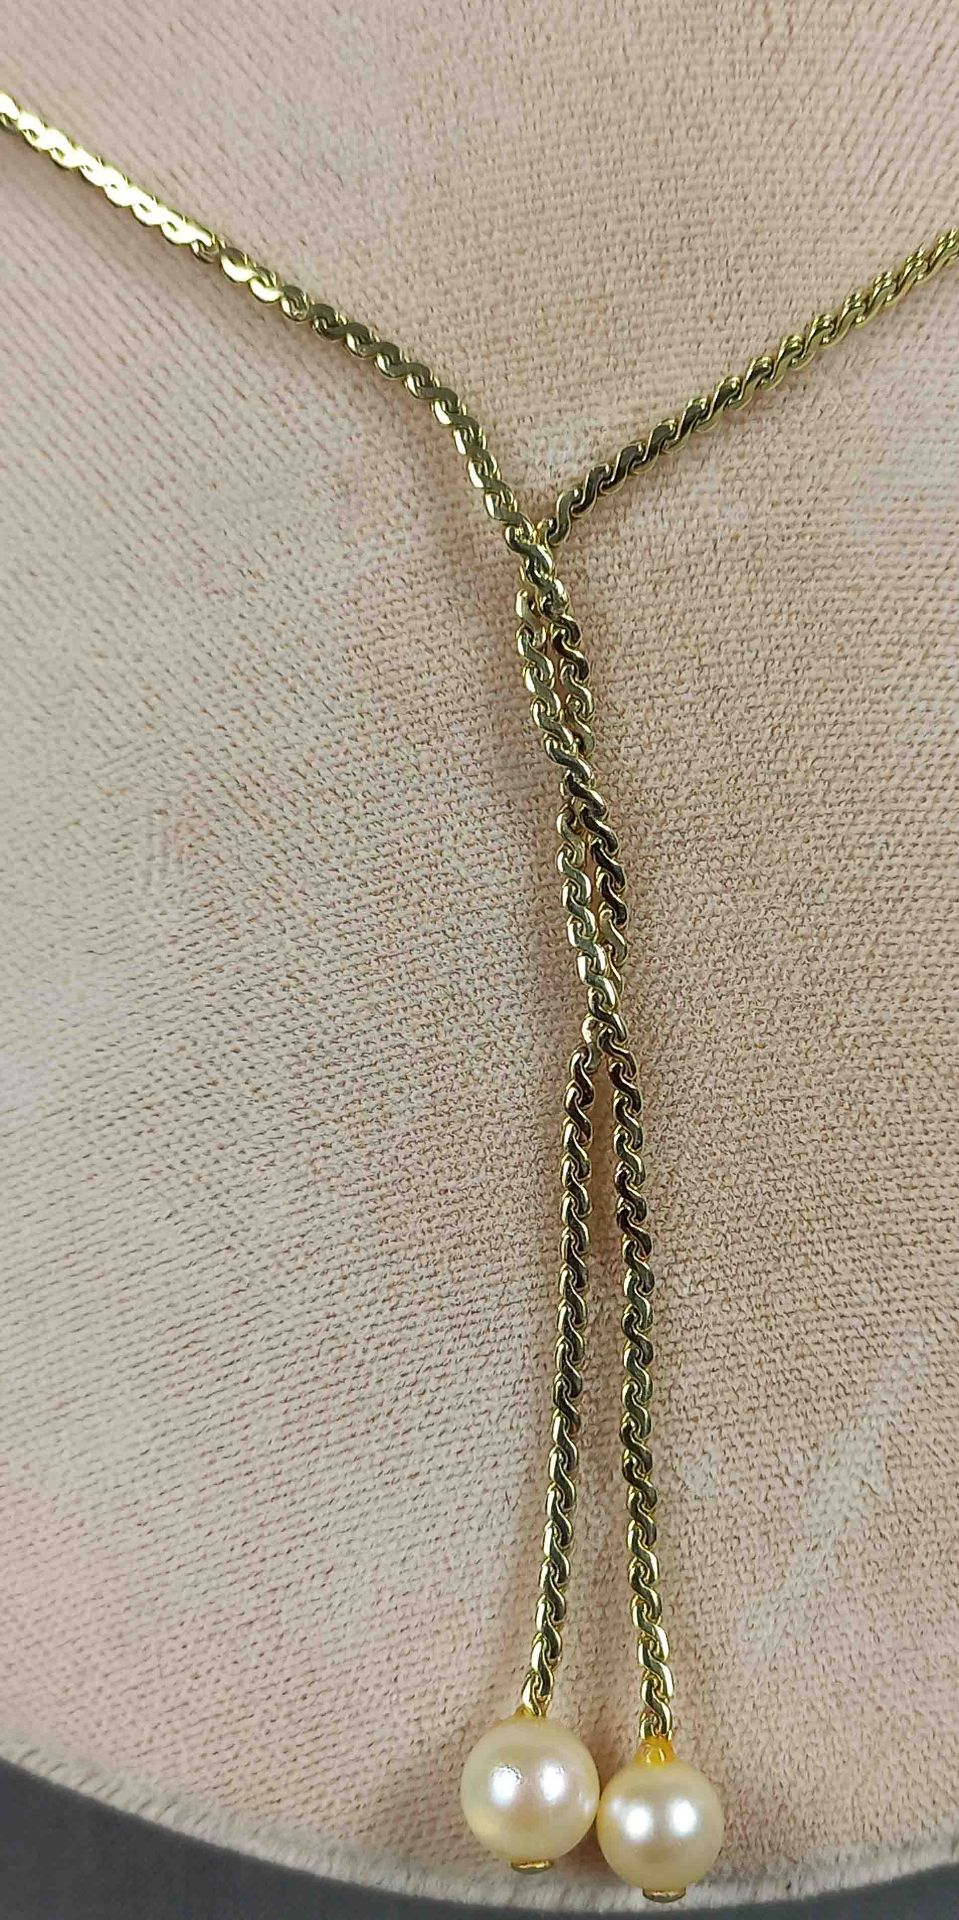 Collier mit passenden Ohrhängern. Gold 585. 6 Perlen. - Bild 4 aus 16